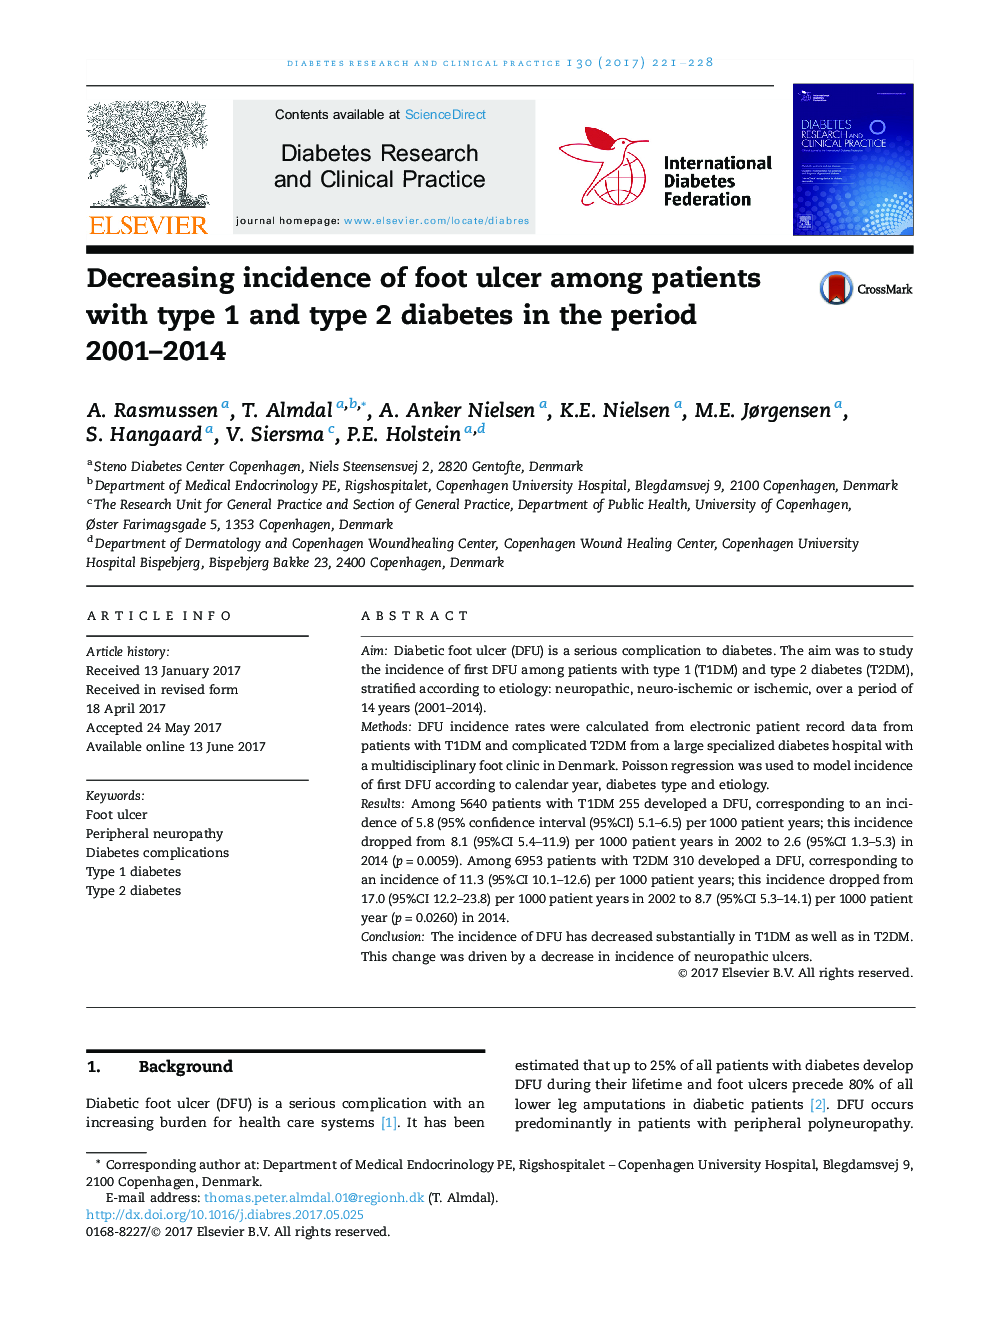 کاهش بروز زخم پا در بیماران مبتلا به دیابت نوع 1 و 2 در دوره 2001-2014 